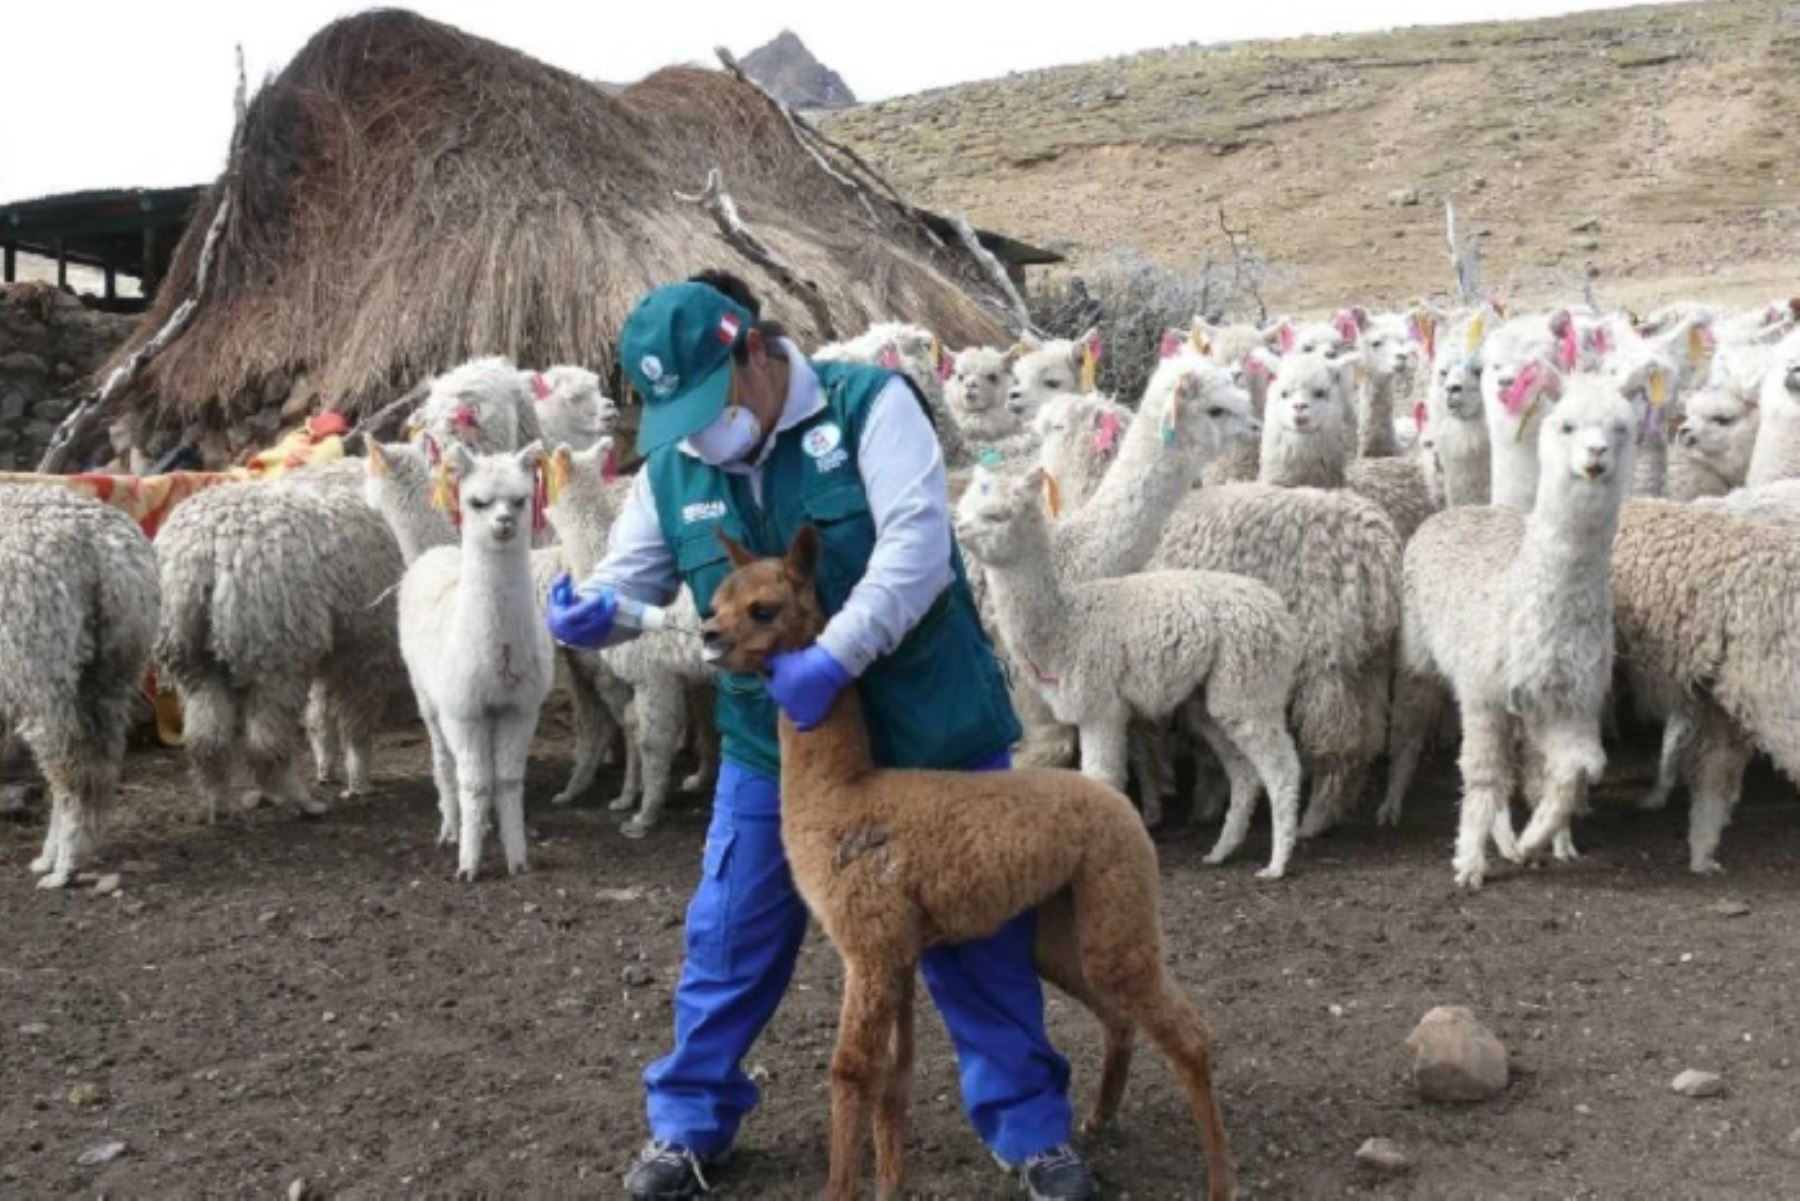 Minagri atiende a llamas y alpacas ante bajas temperaturas en Ayacucho